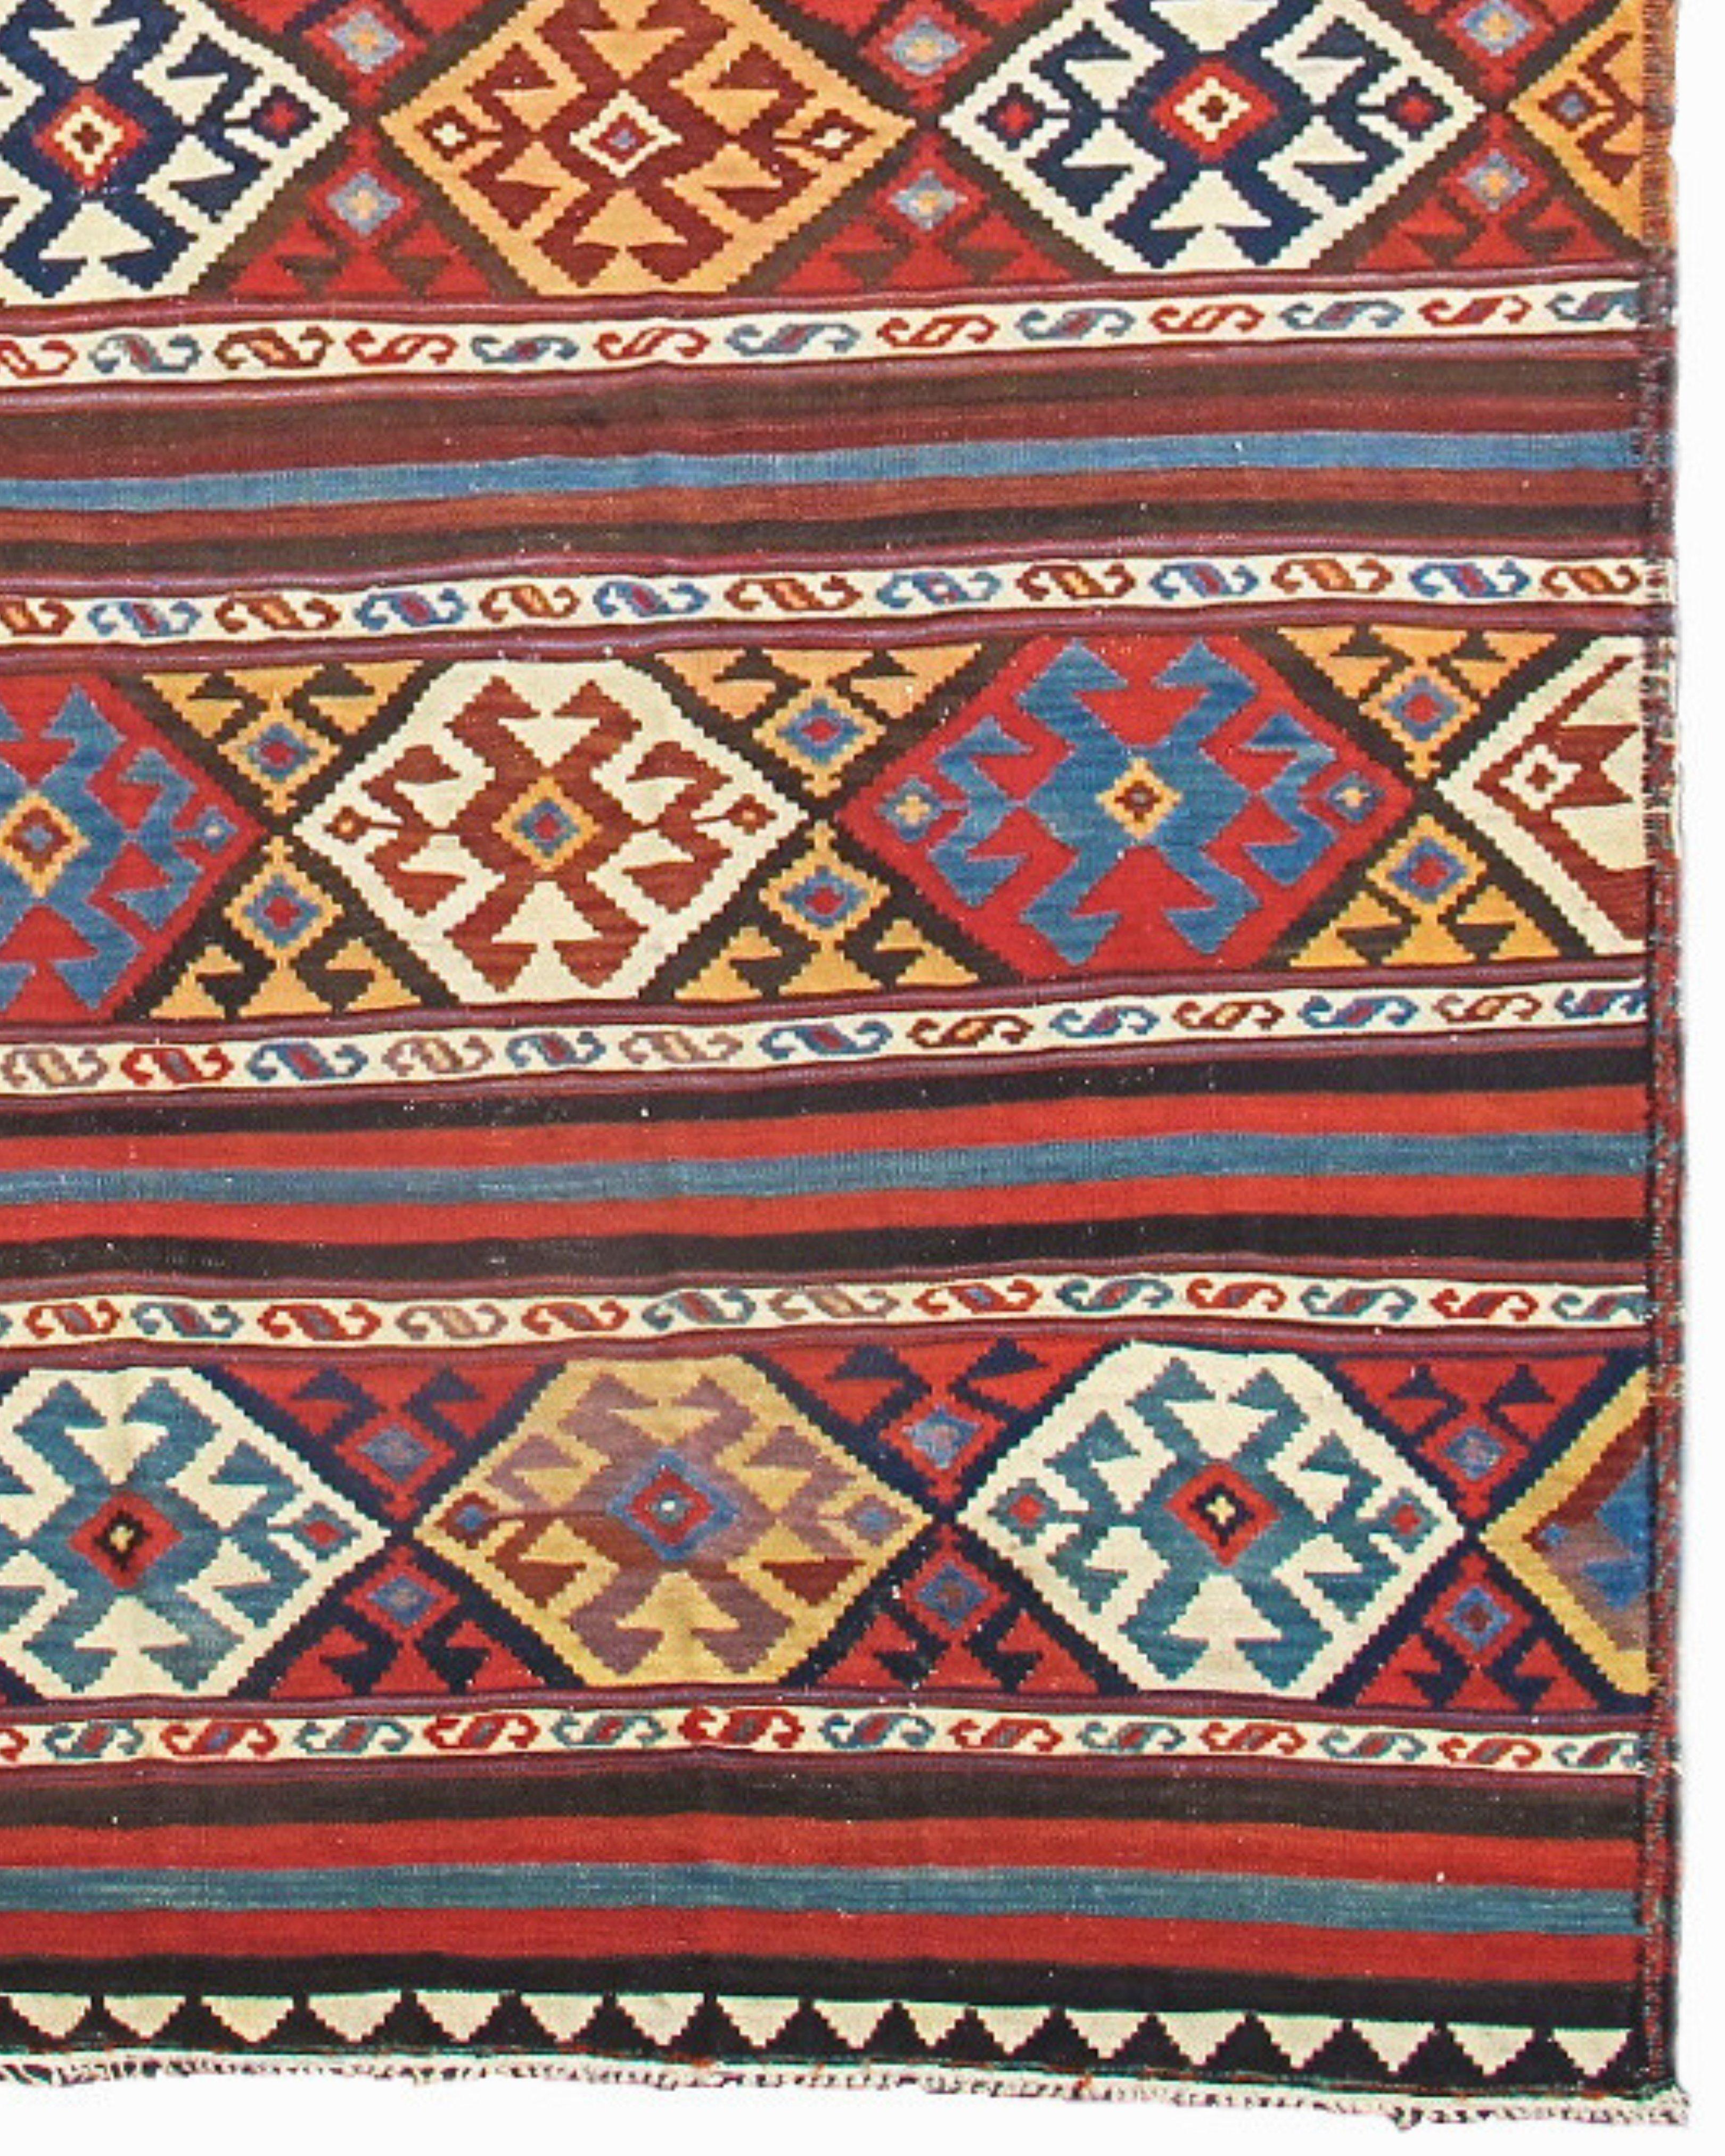 19th Century Antique Caucasian Shahsevan Kilim Rug, c. 1900 For Sale